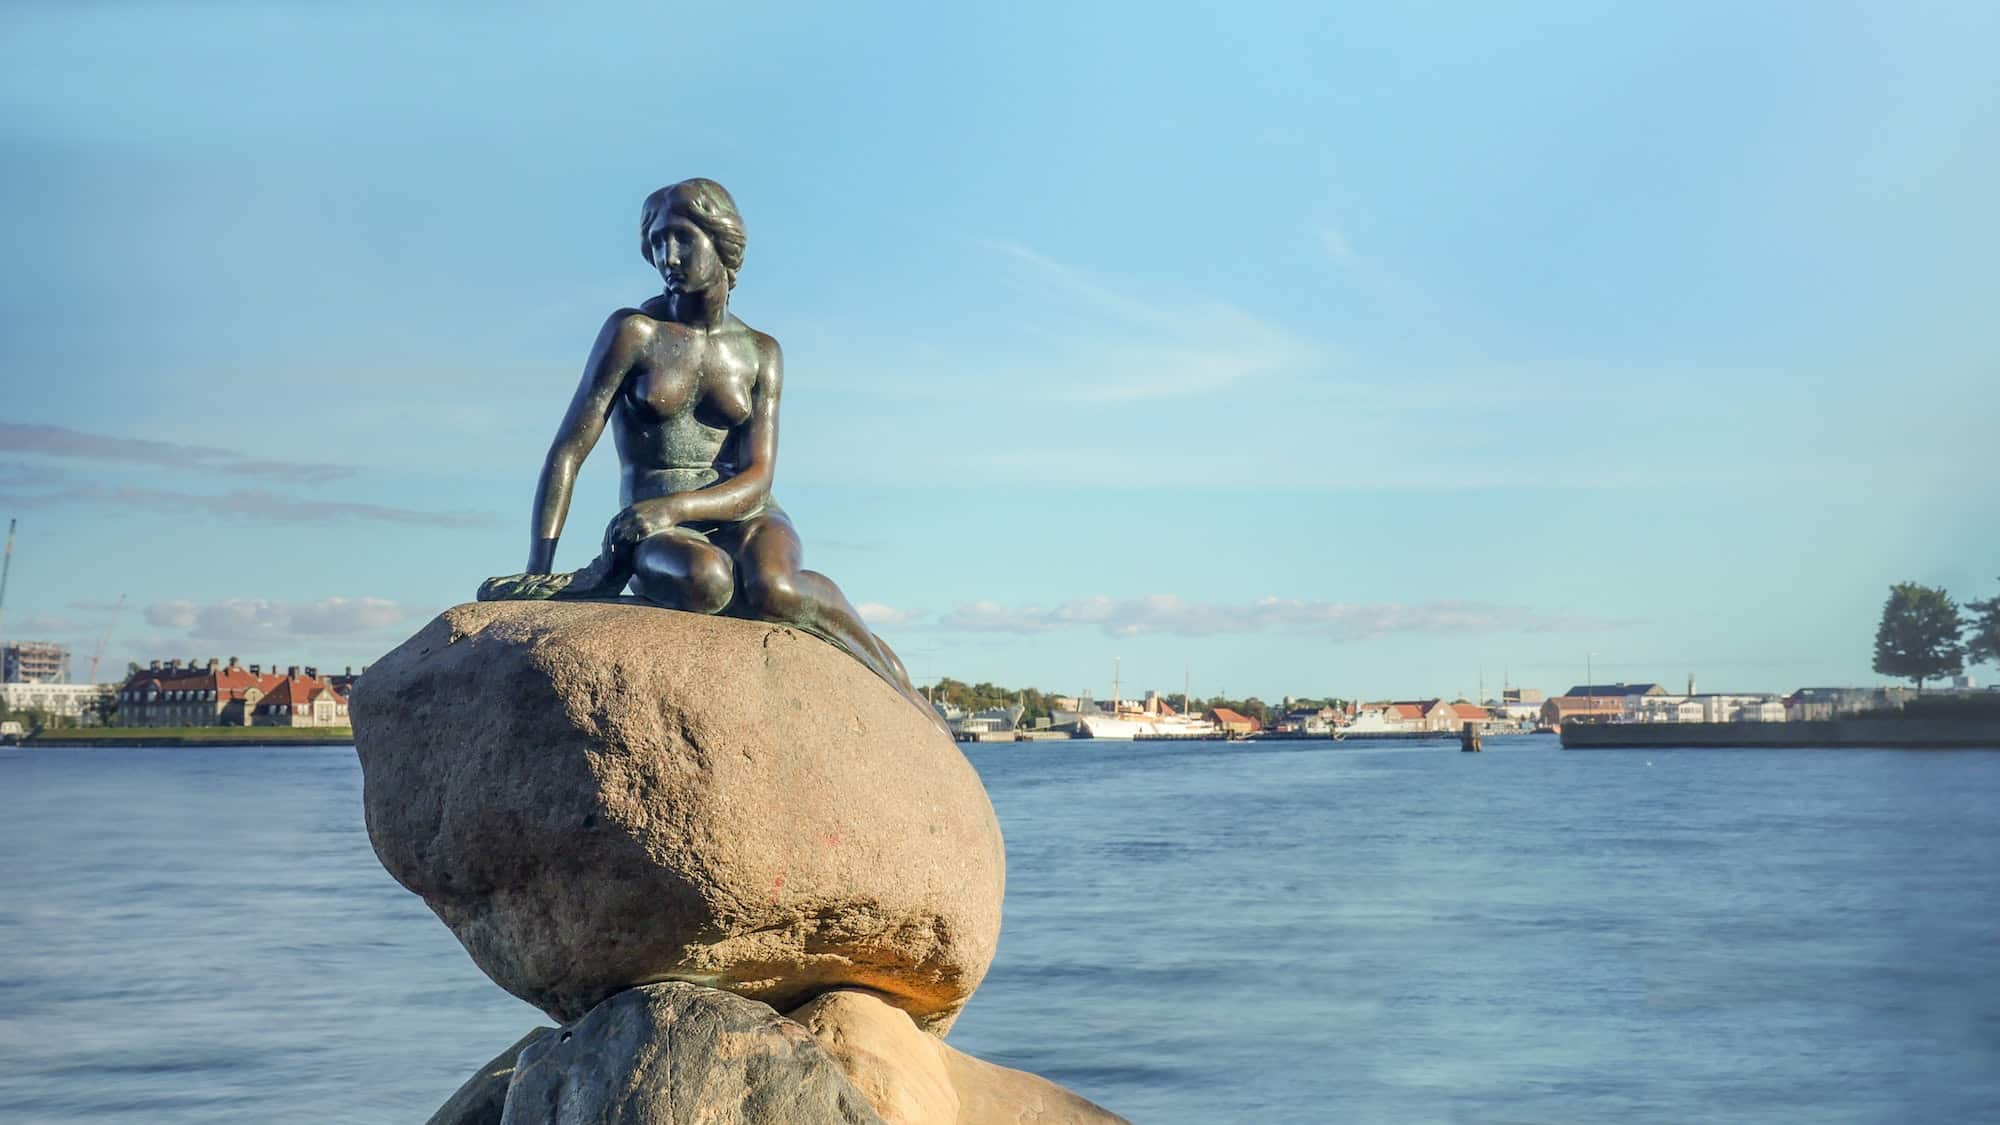 Little Mermaid statue on rock in Denmark